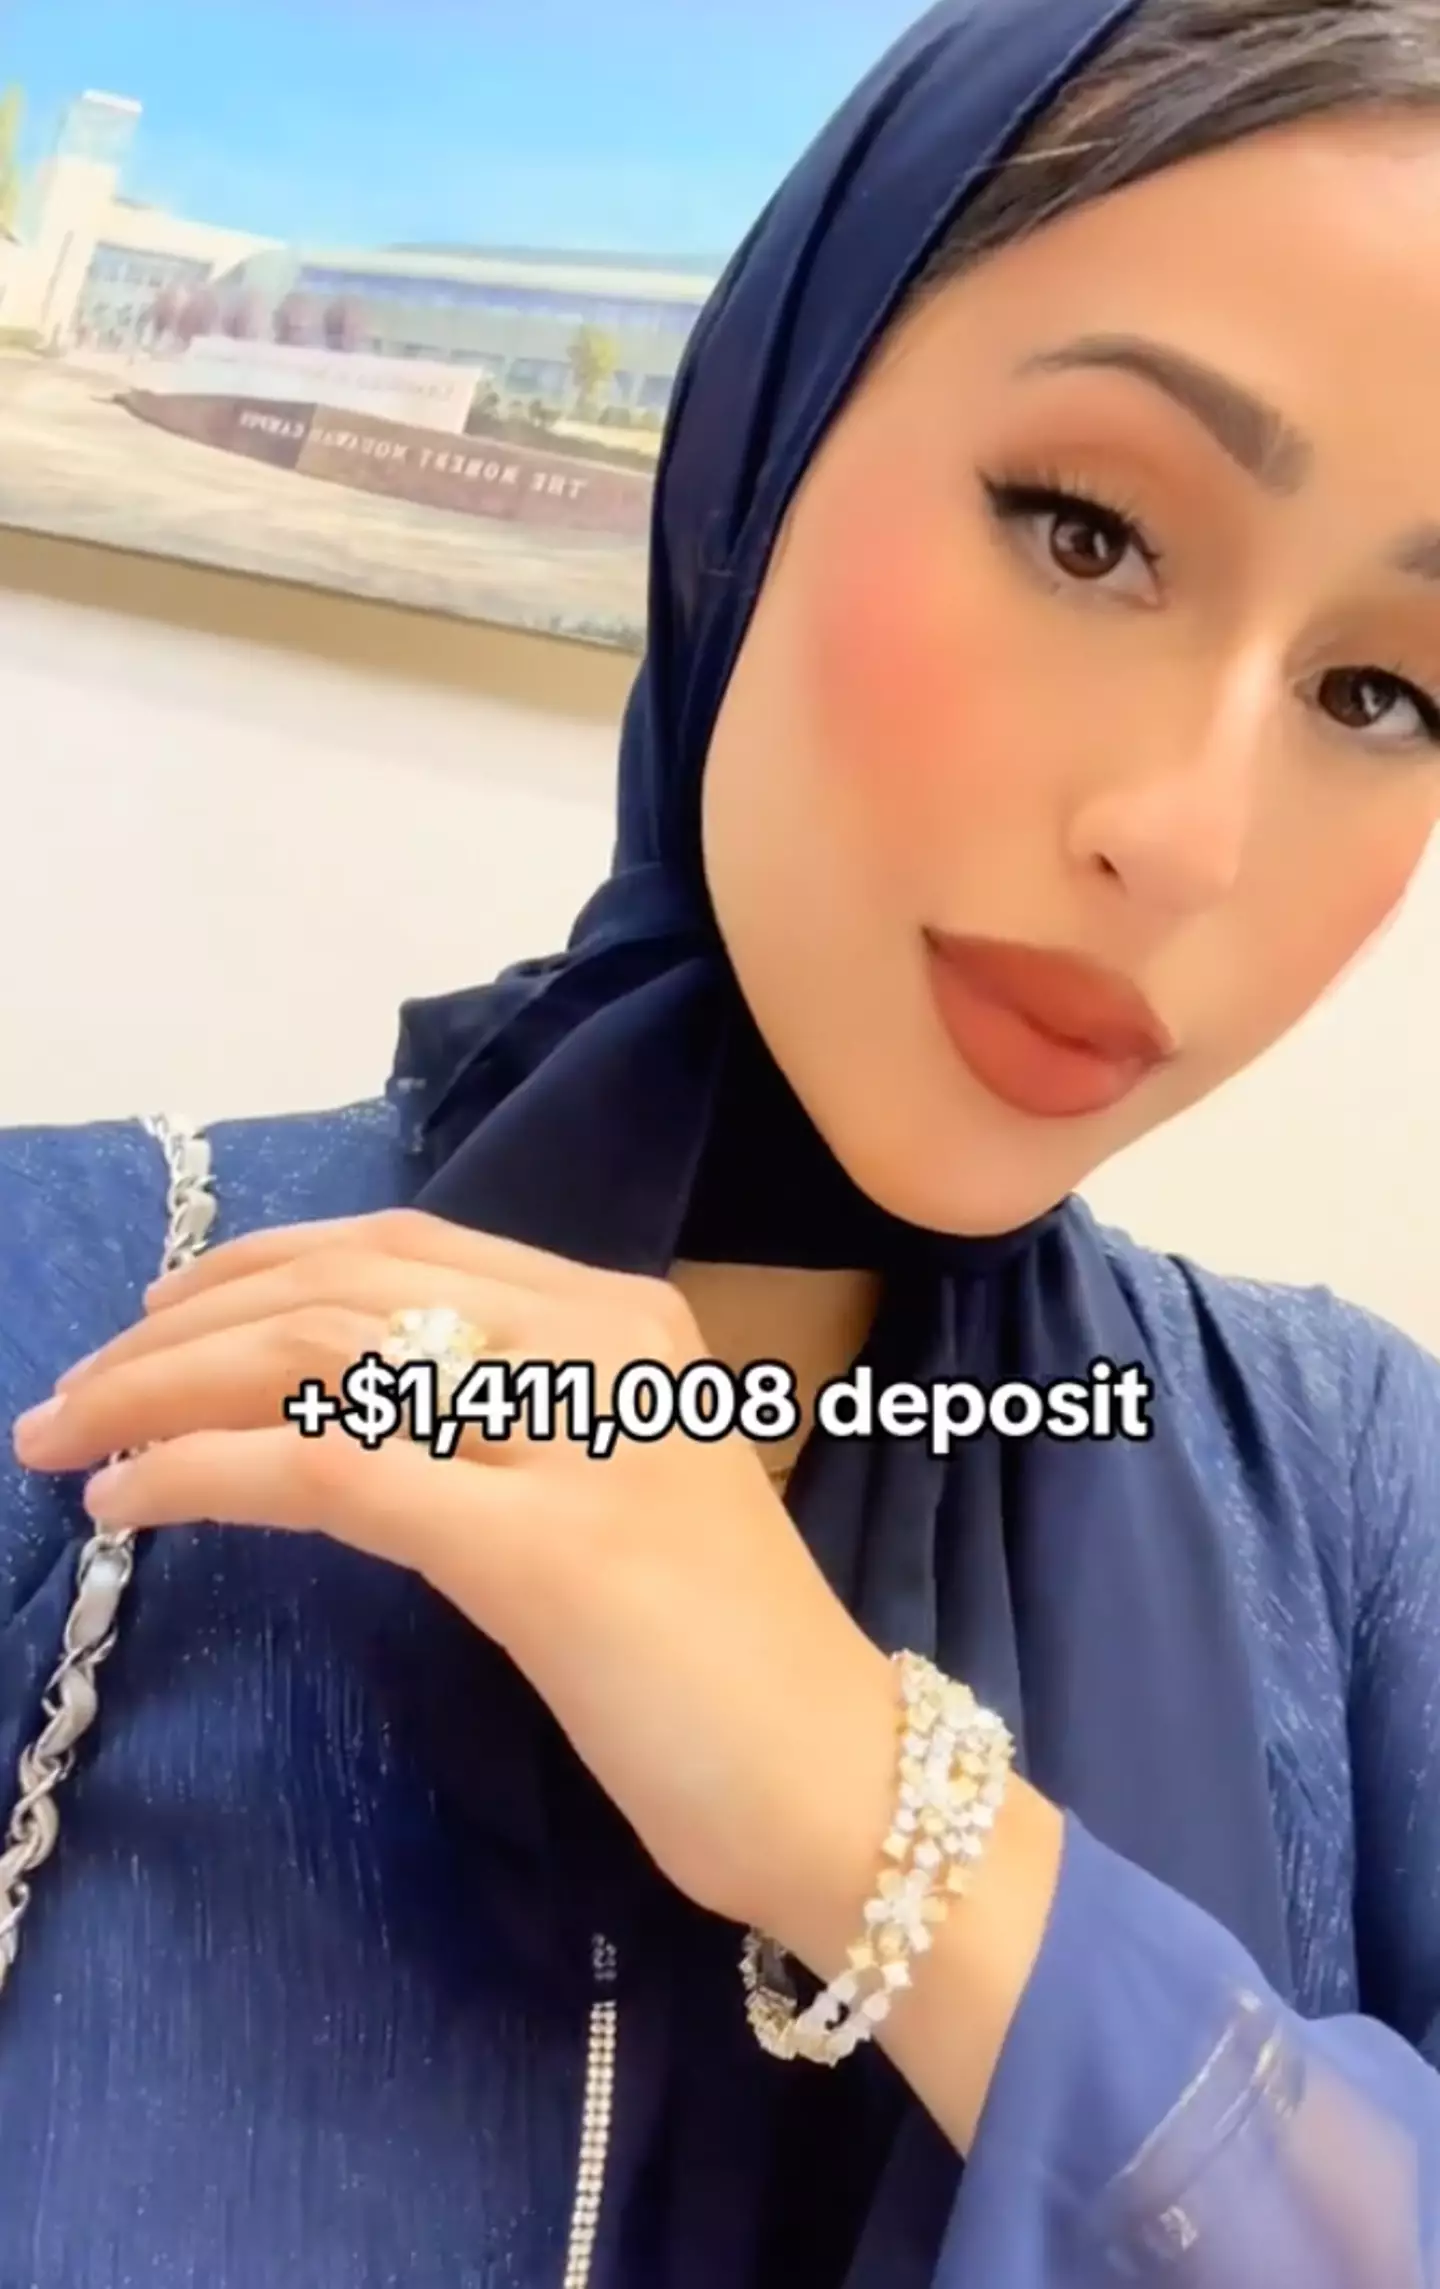 The self-proclaimed 'Original Dubai Housewife' revealed how she splashed the cash.